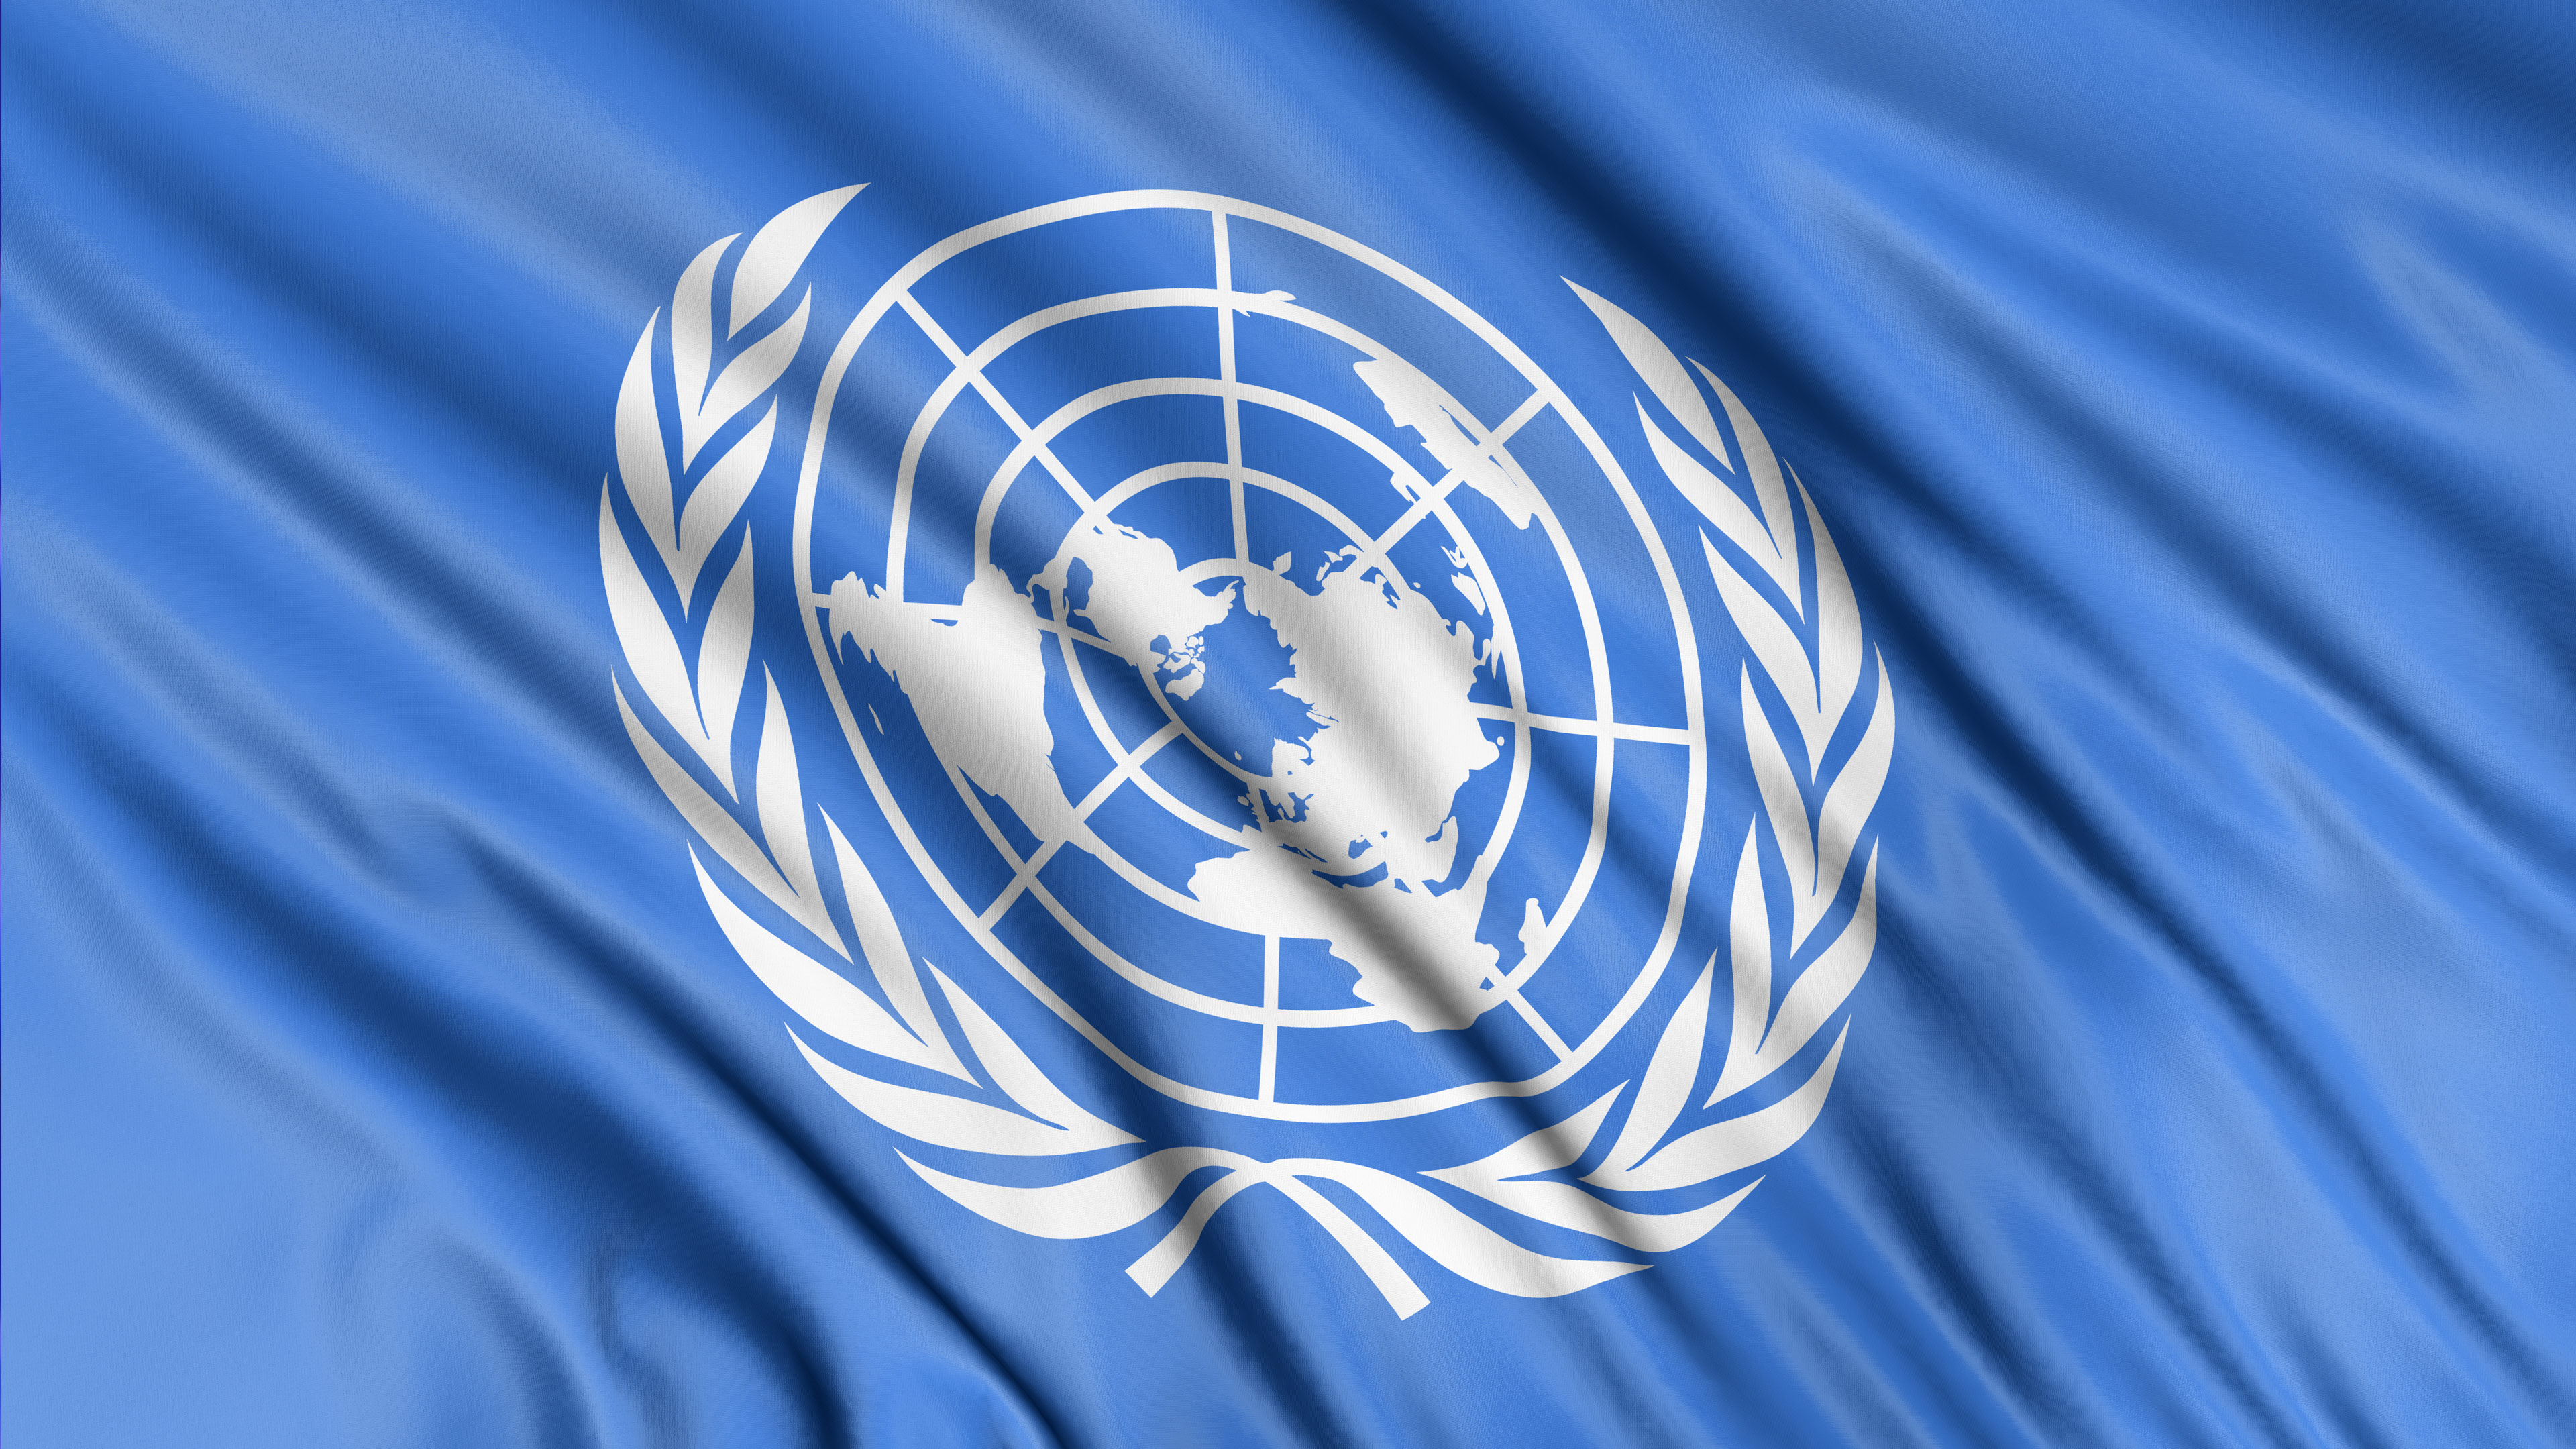 Оон и международных вопросы. Всемирная организация туризма ООН. Флаг ПРООН. Флаг организации Объединенных наций. Международные организации в туризме.